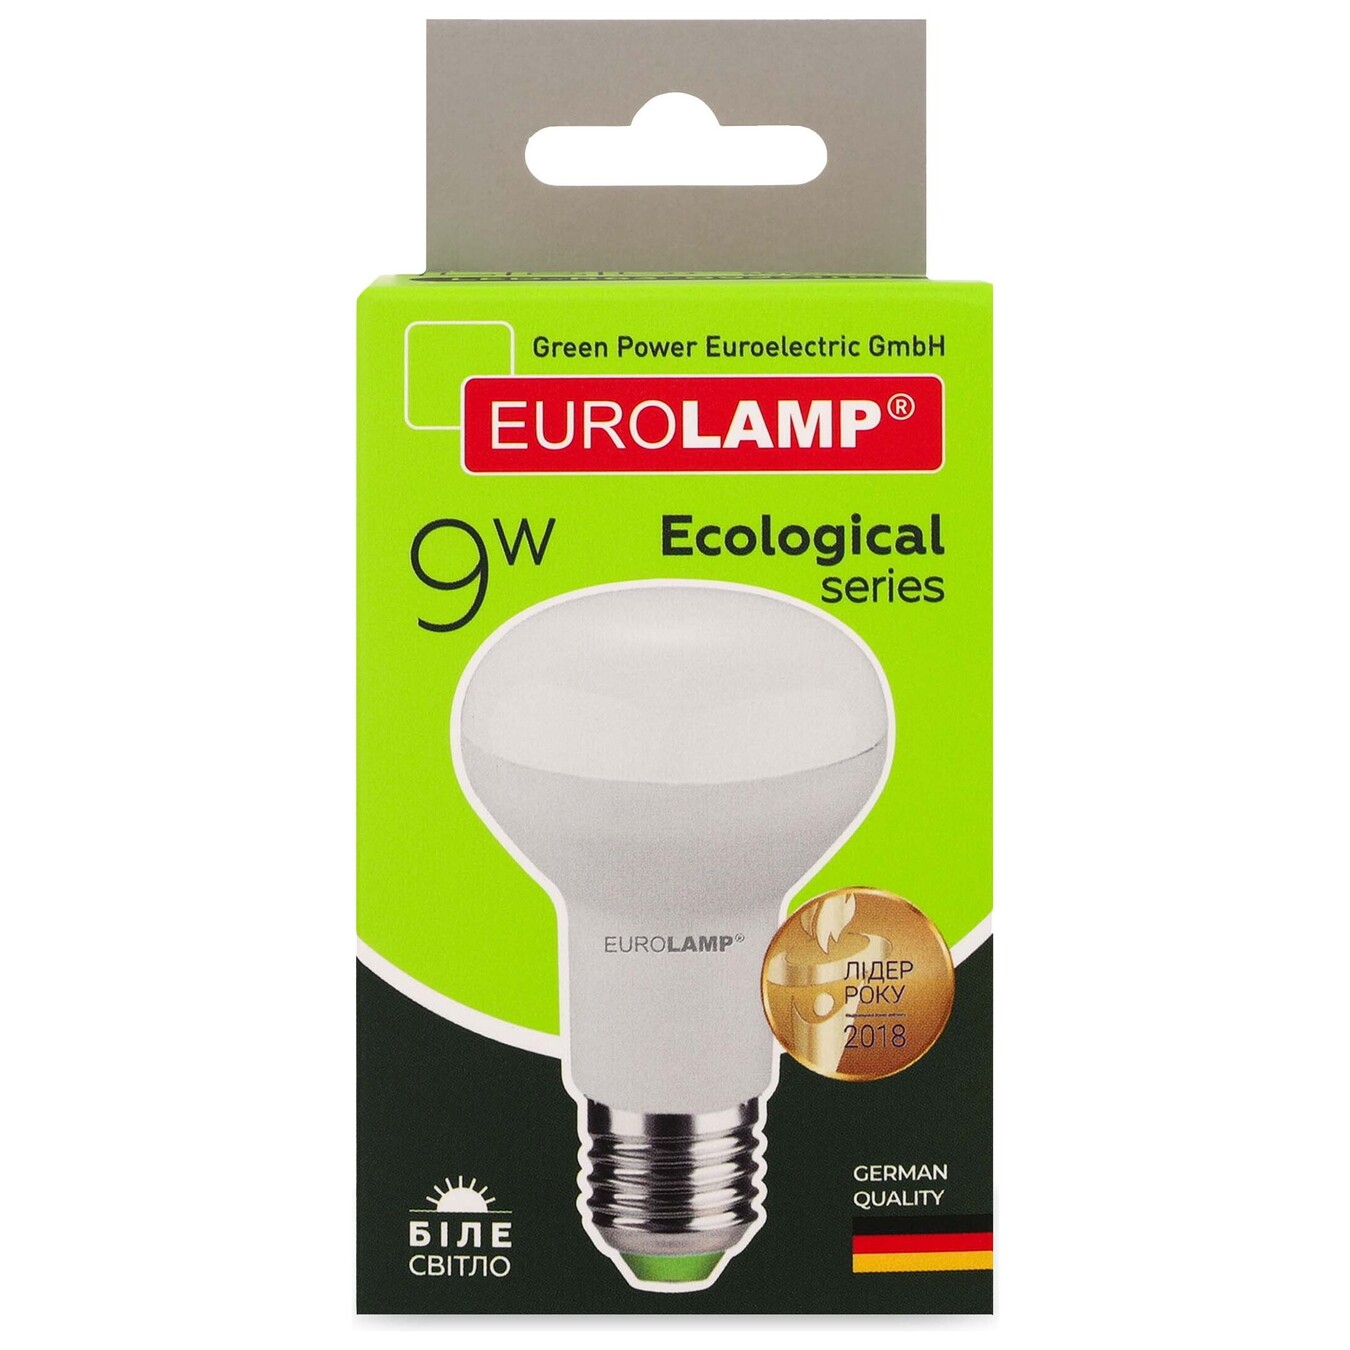 Eurolamp LED lamp ECO series P R63 9W E27 4000K